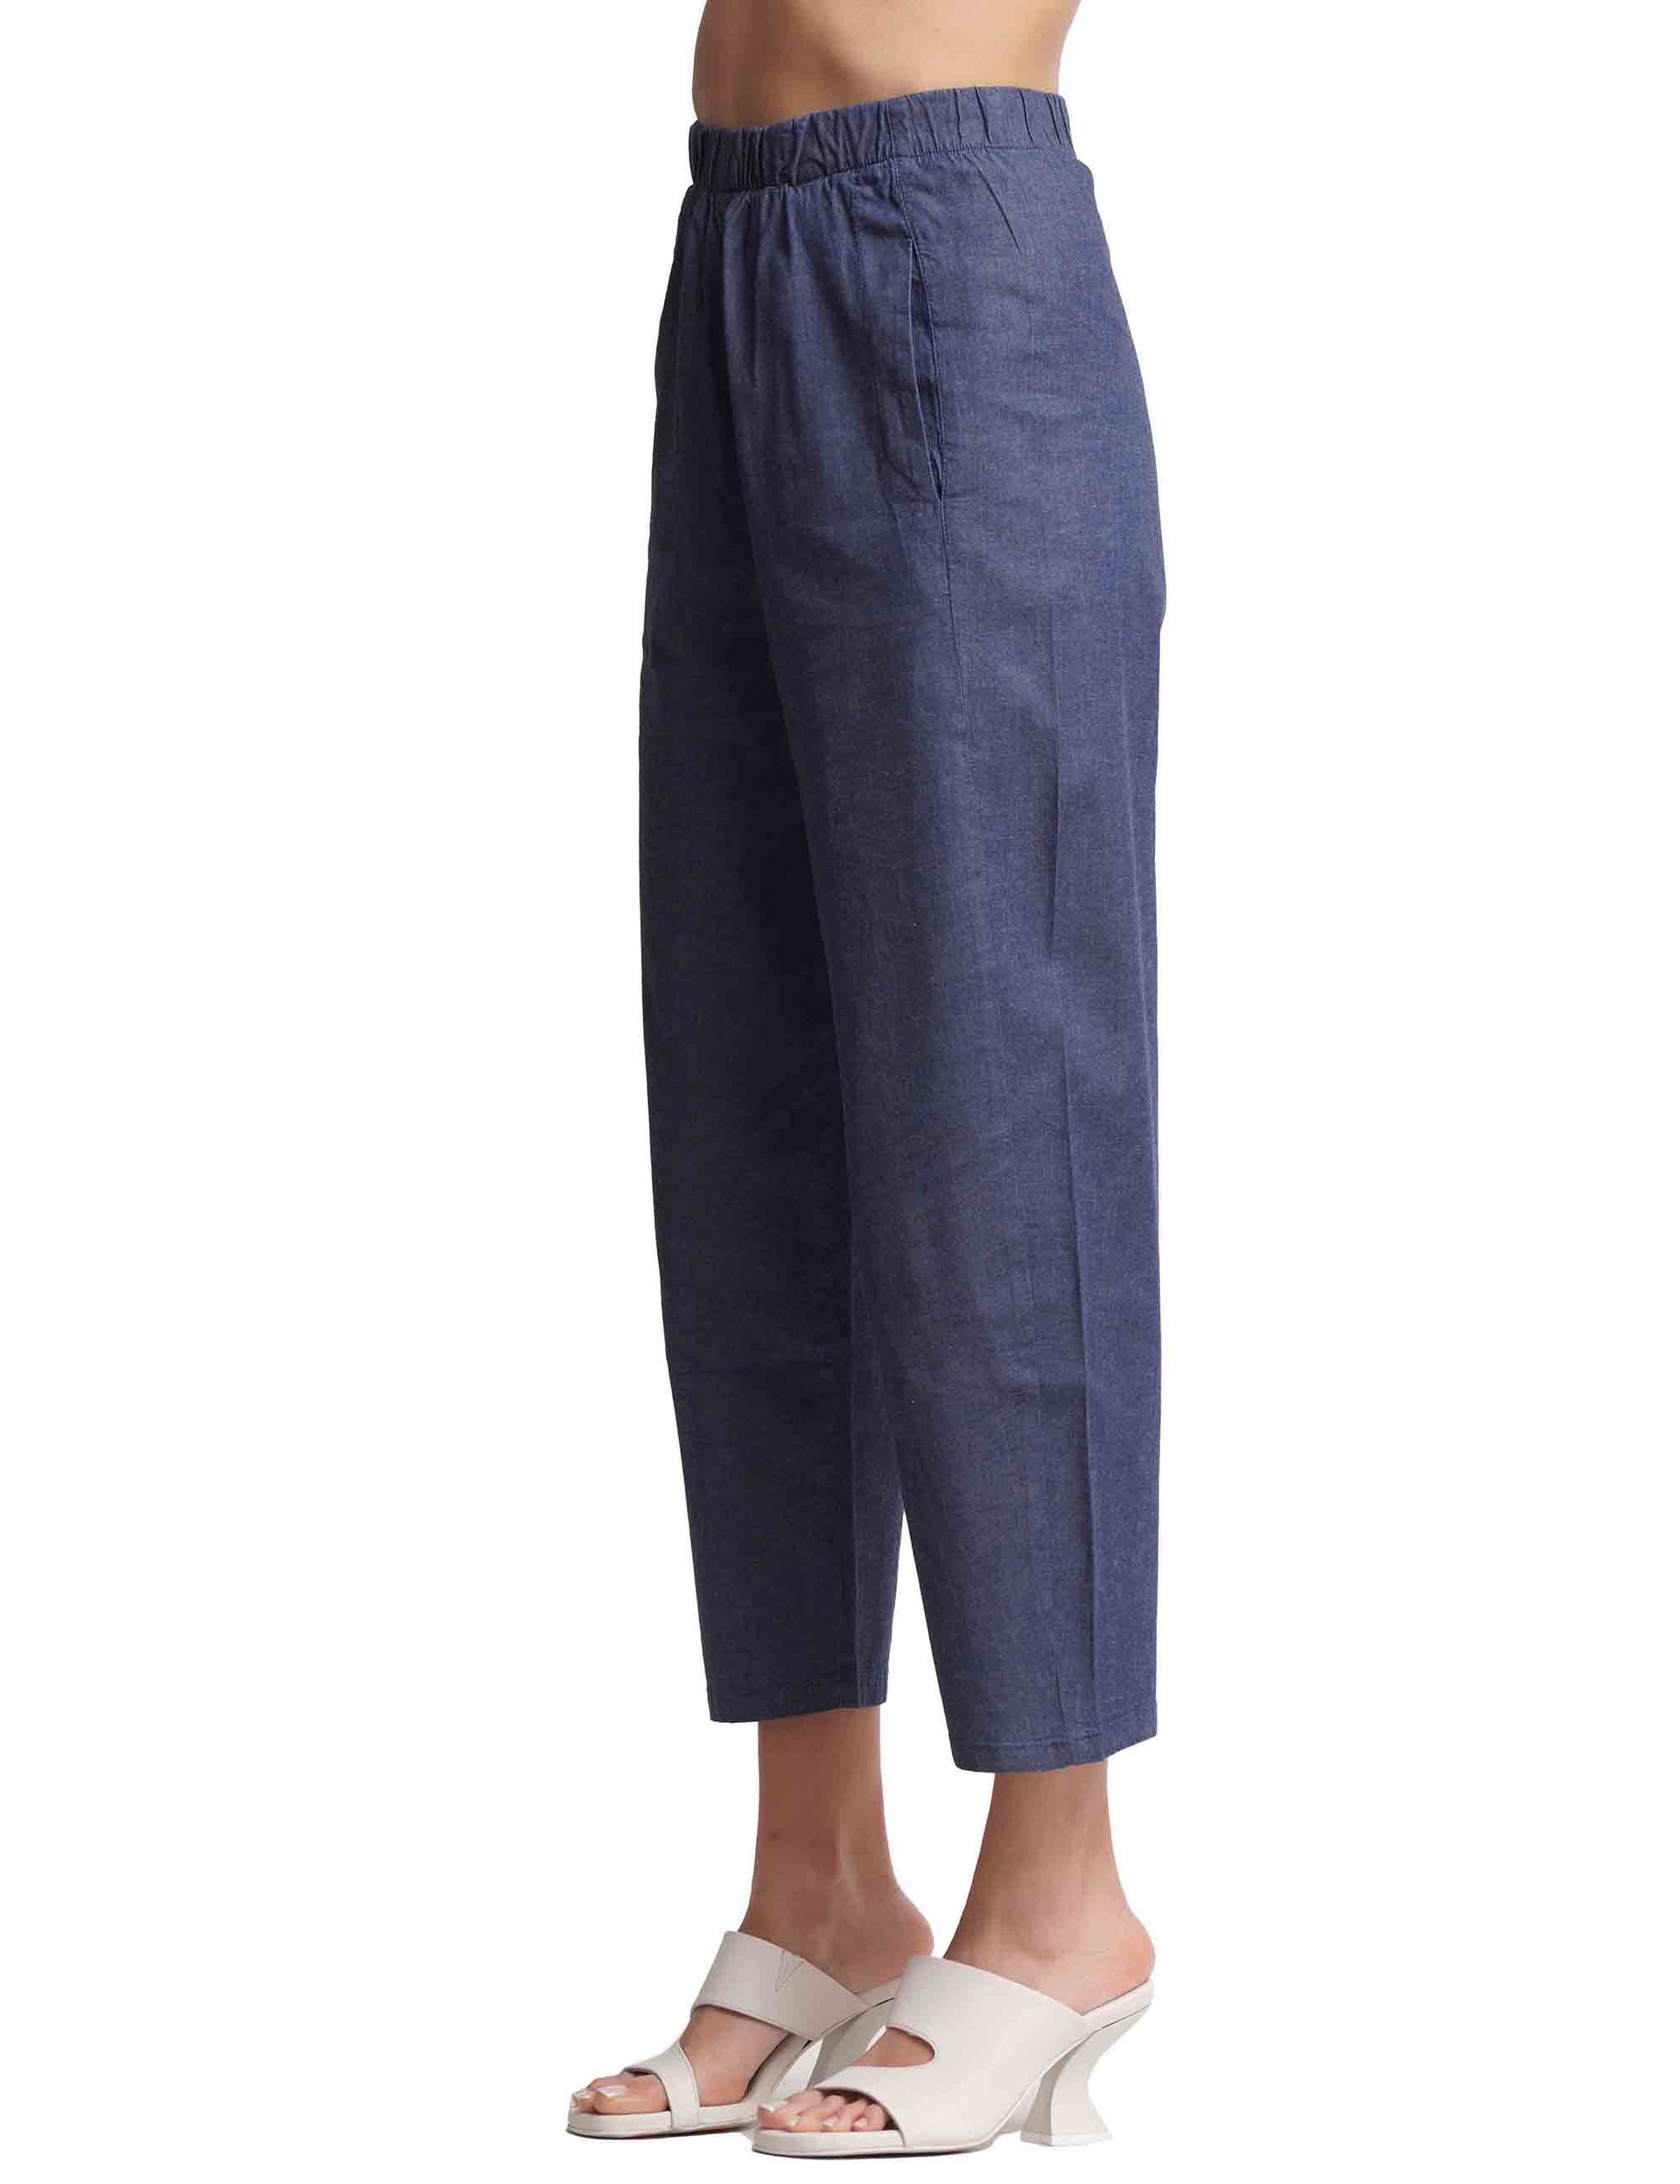 Pantaloni donna in cotone blu con elastico in vita e tasche alla francese